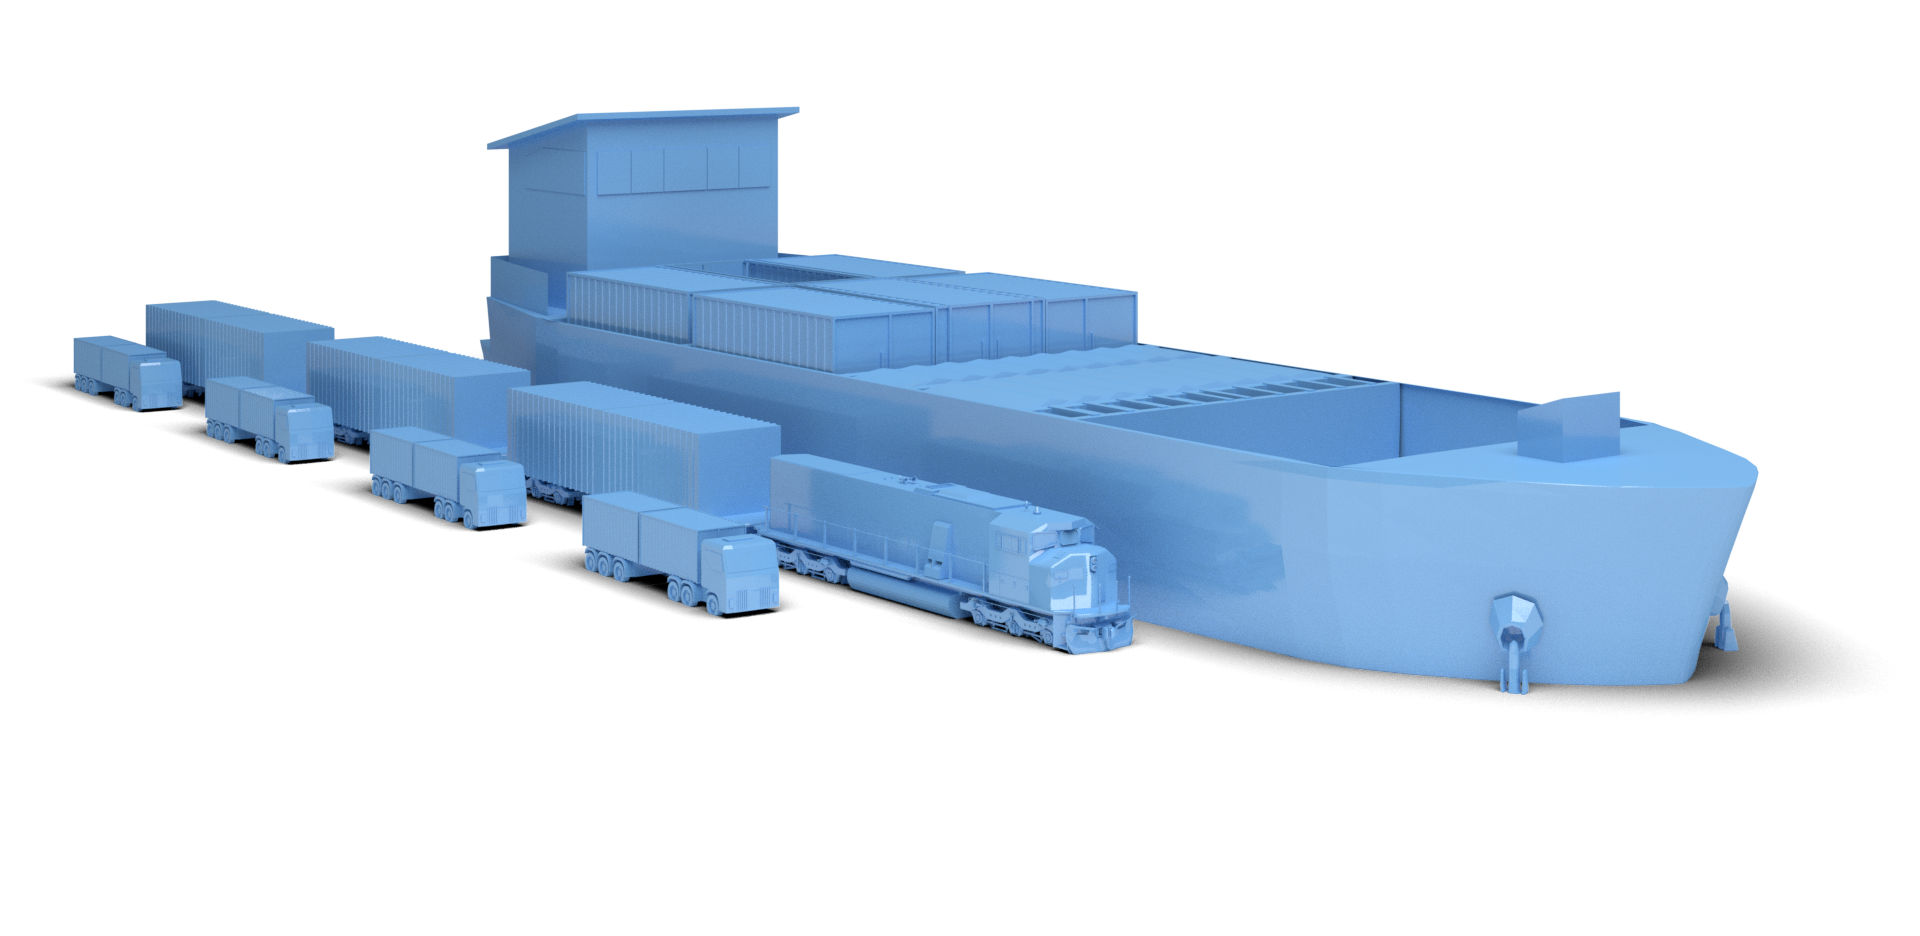 Piktogramm mit einem Binnenschiff, einem Güterzug mit Waggons und vier LKWs